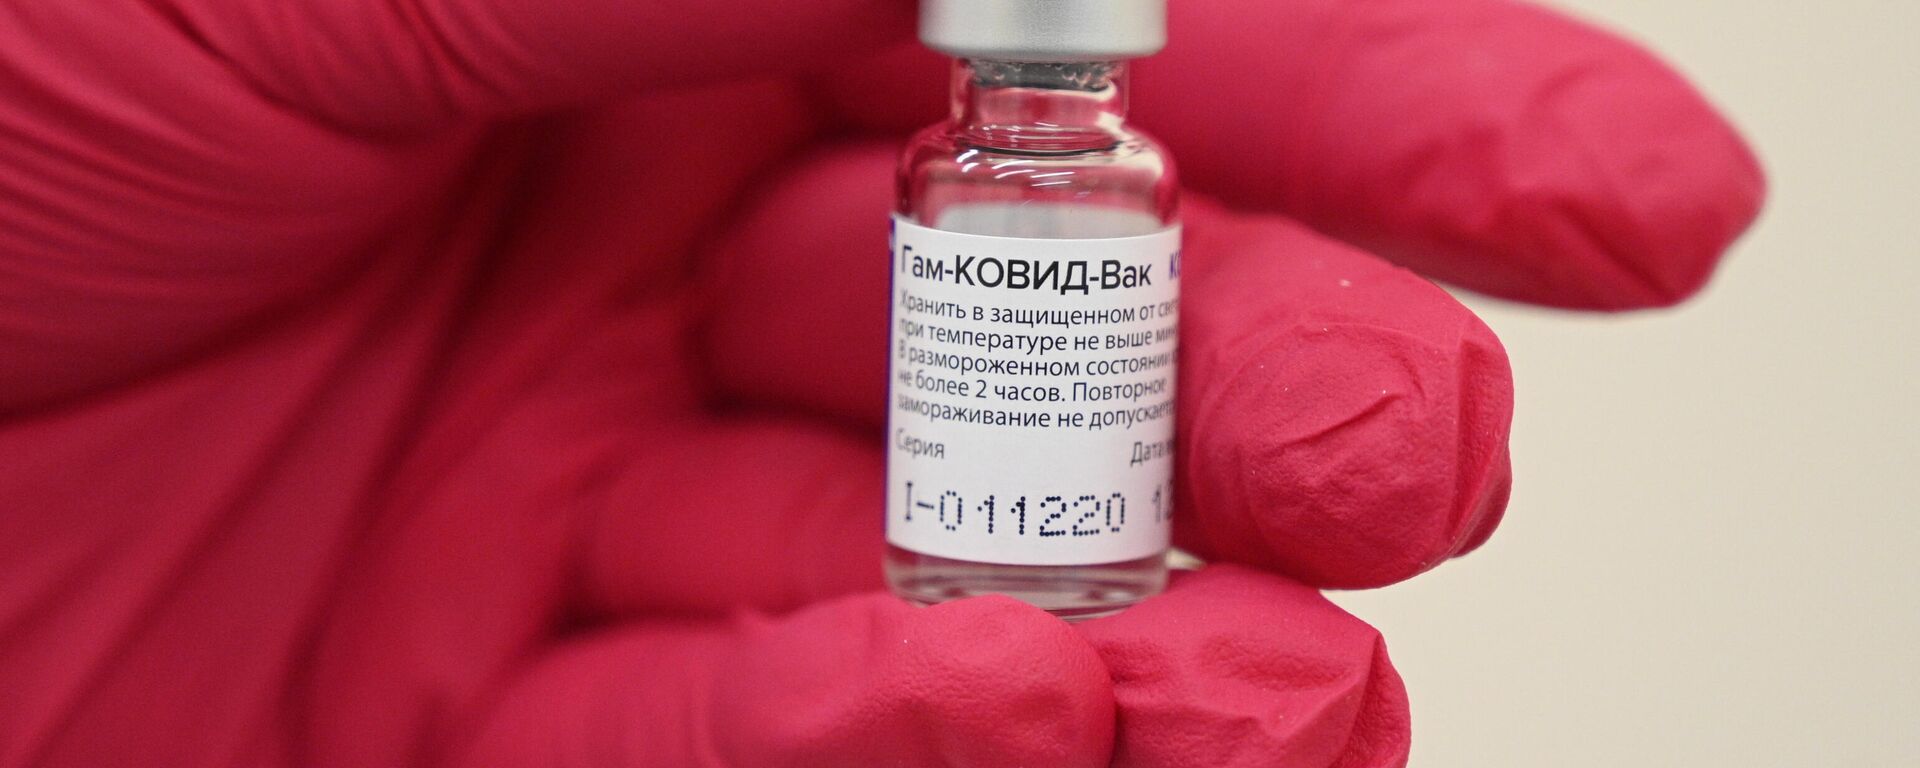 Новый пункт вакцинации от COVID-19  в ТЦ Тройка - Sputnik Узбекистан, 1920, 22.03.2021